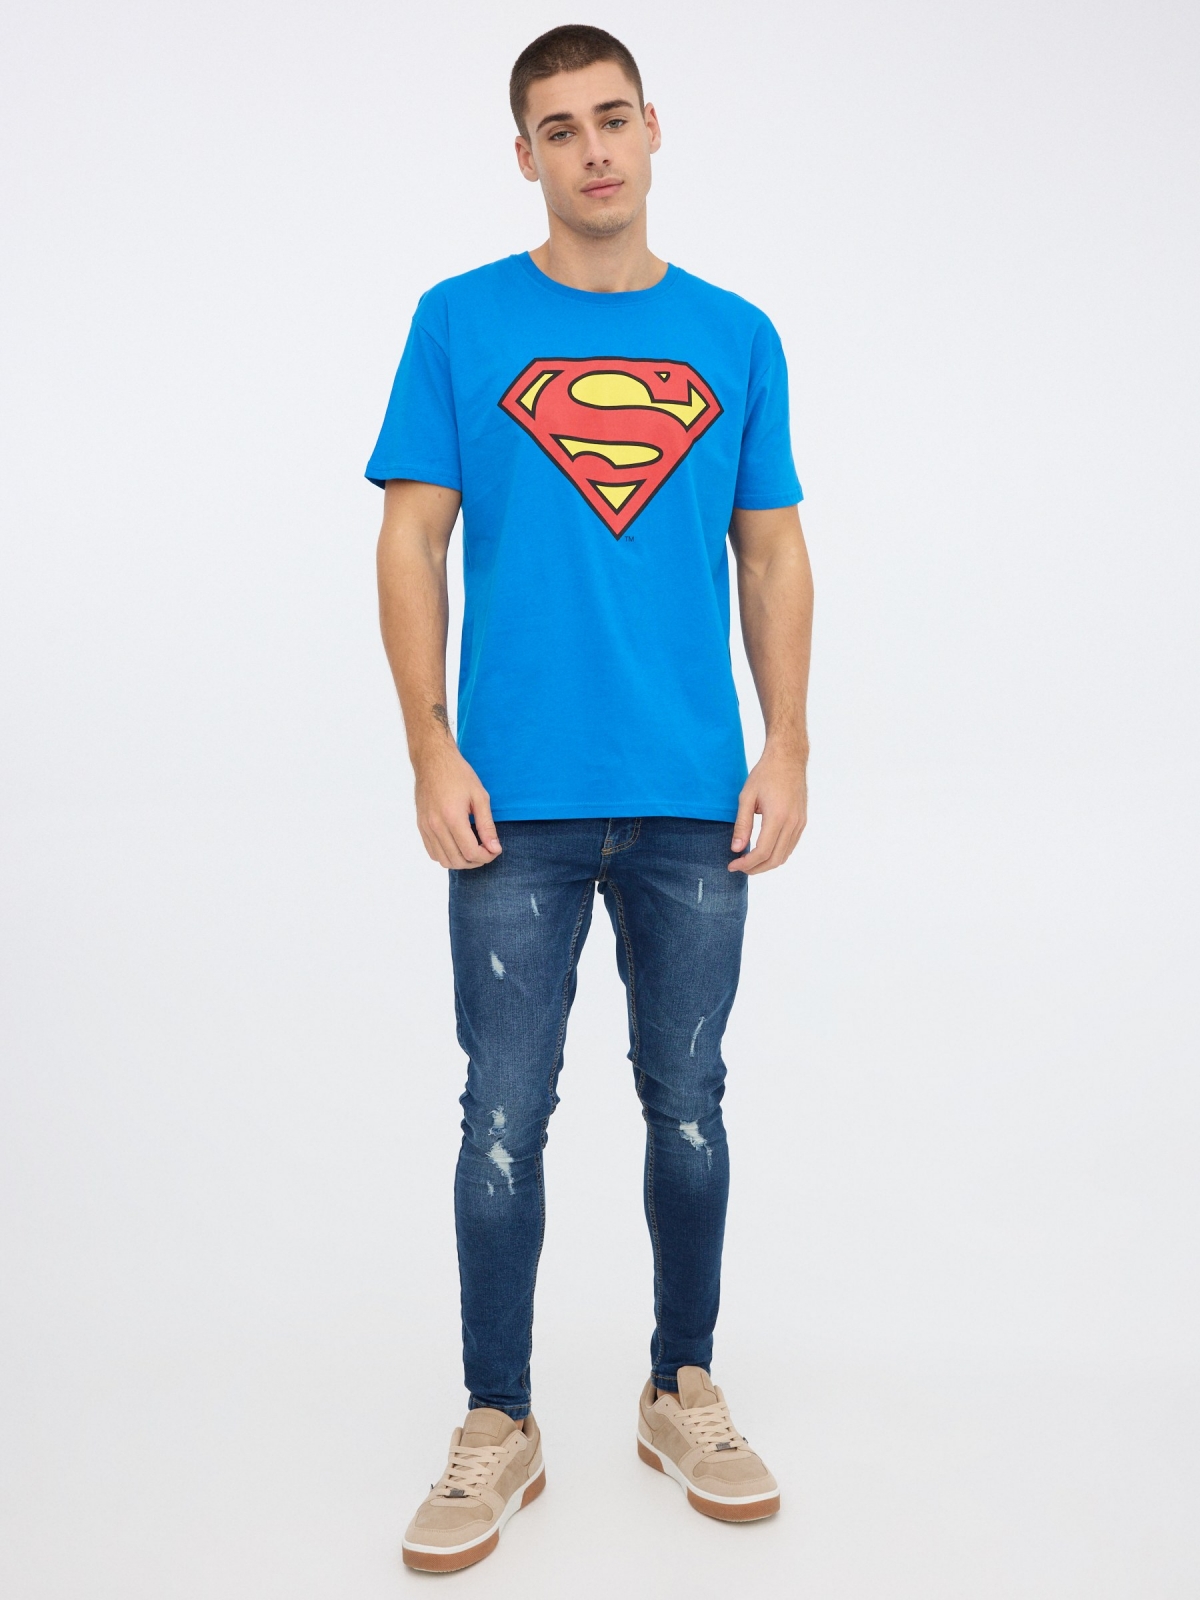 Superman Suit Up Camiseta para hombre (S) Azul Real, Azul